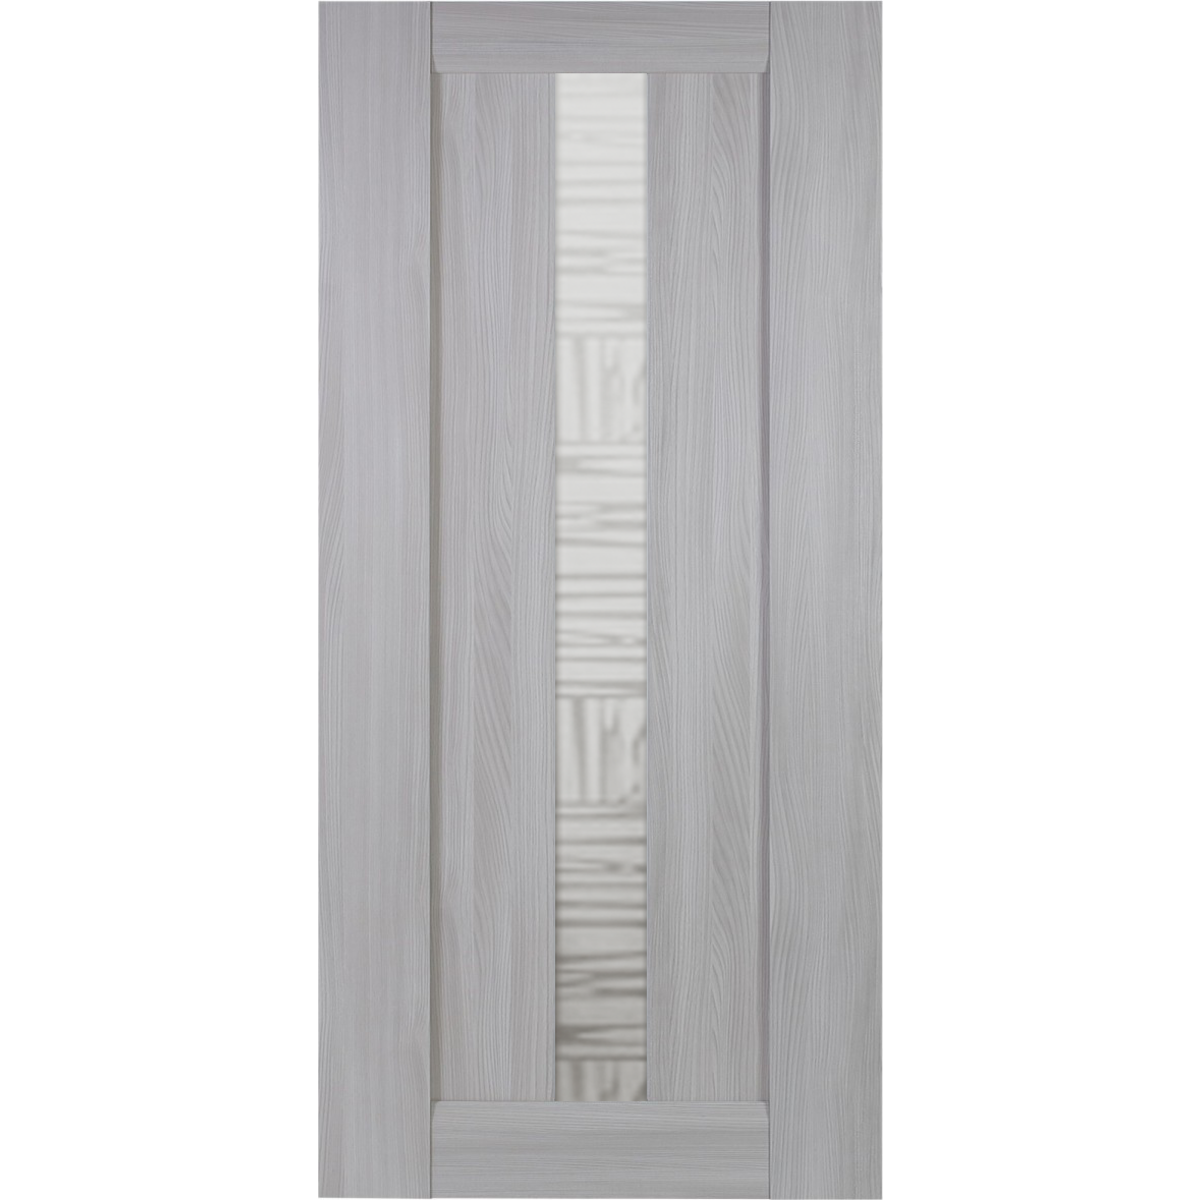 Дверь межкомнатная остекленная Челси 90x200 см, цвет ясень скандинавский